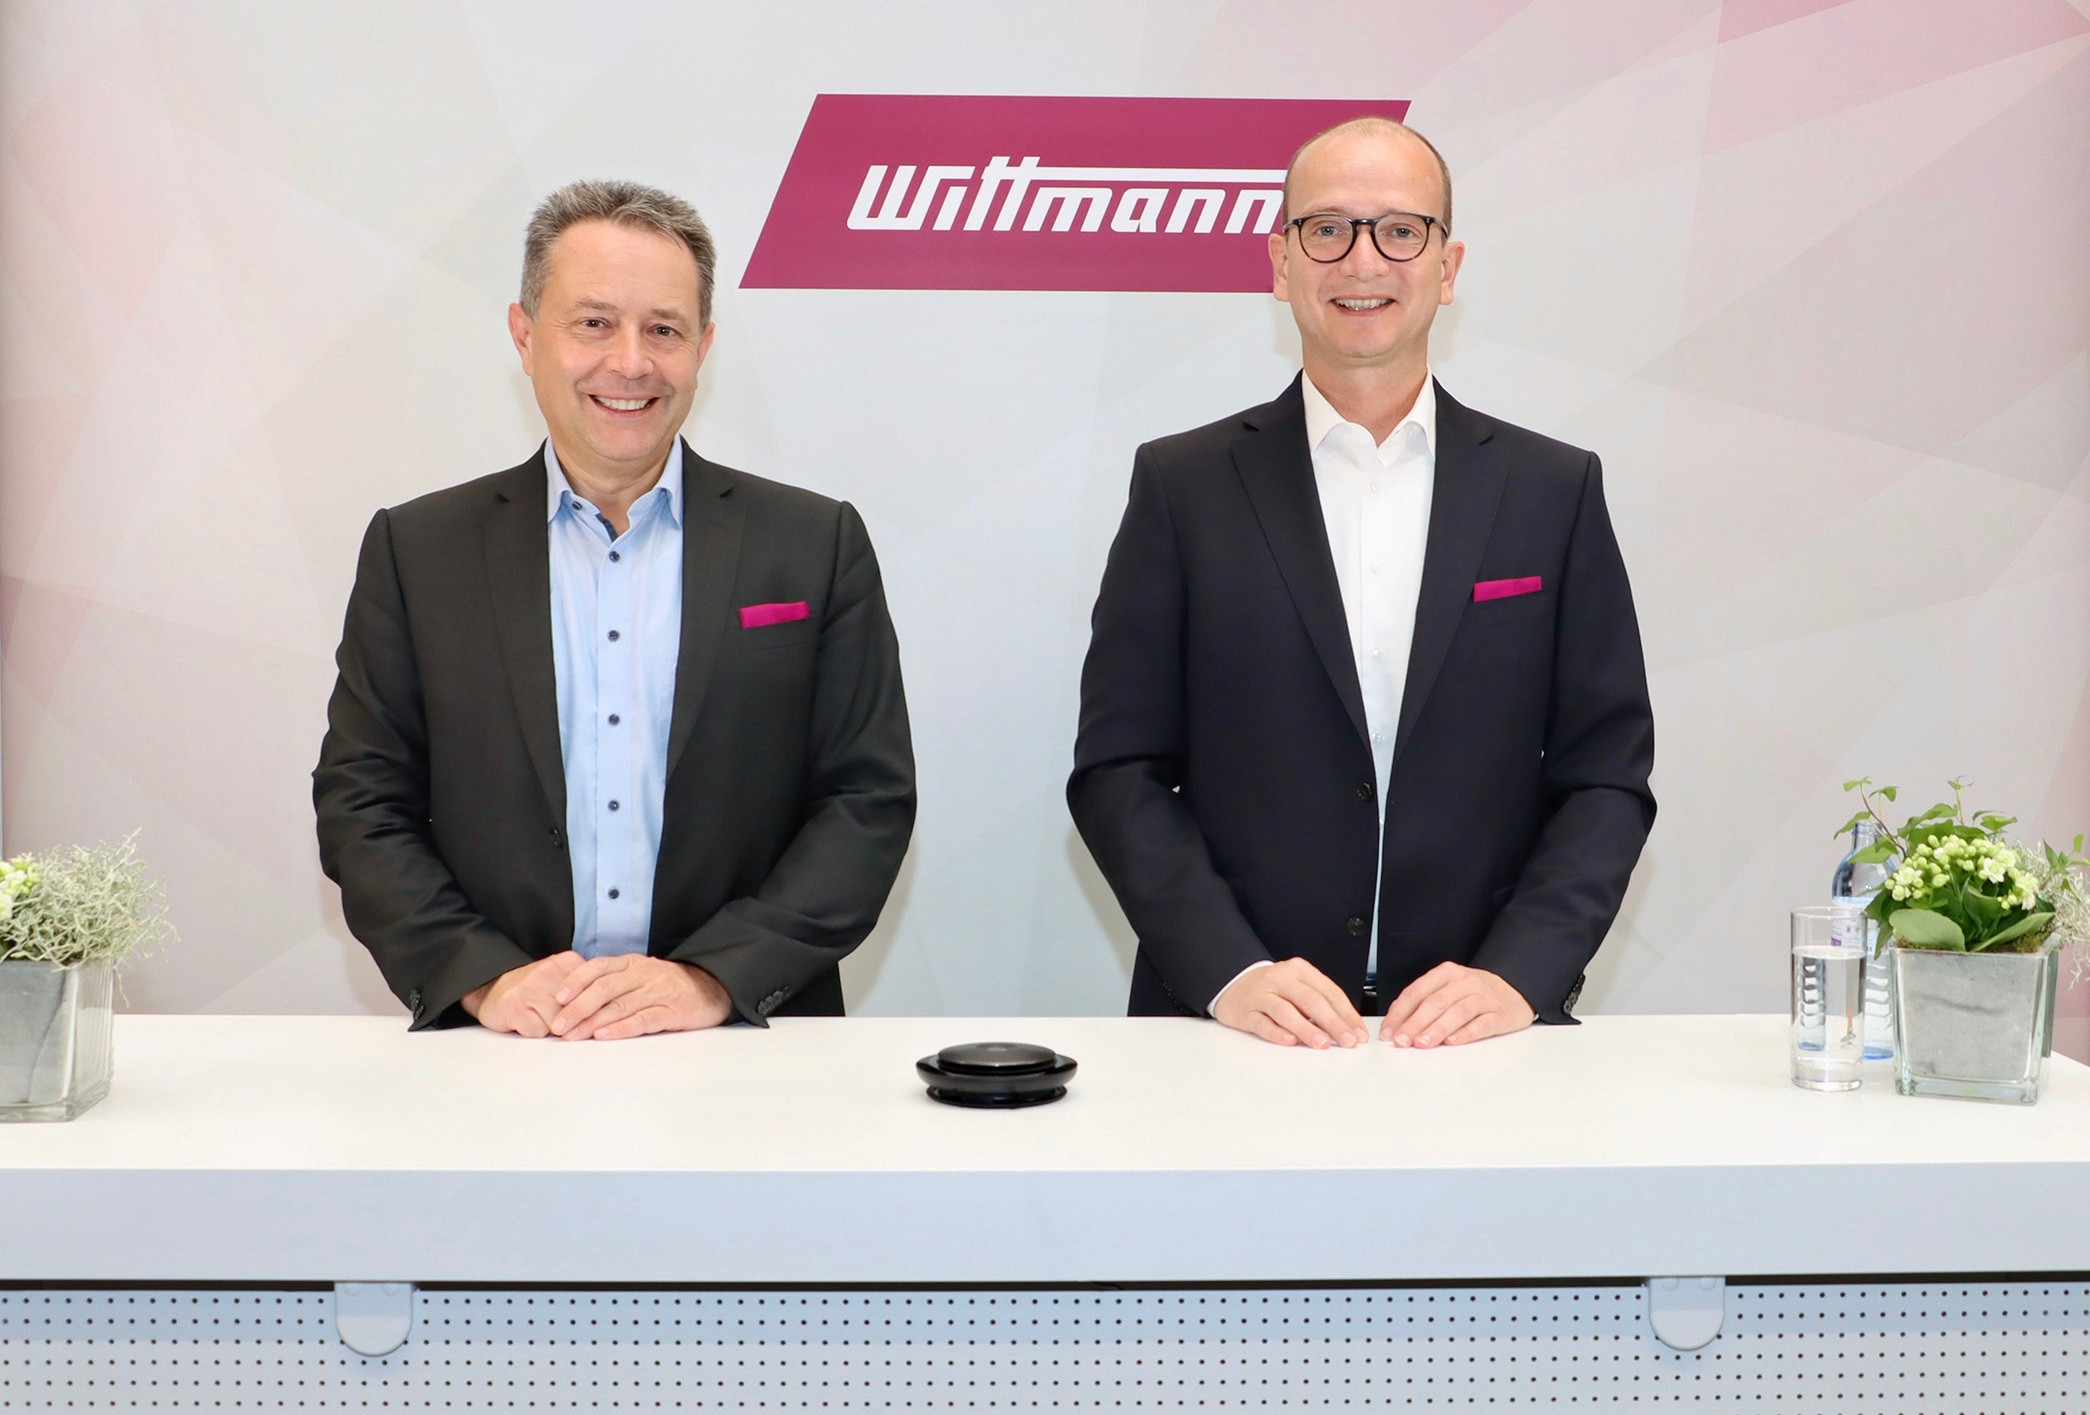 Michael Wittmann, President der Wittmann Group und Rainer Weingraber, Geschäftsführer von Wittmann Battenfeld, waren kurz vor der Fakuma guter Dinge – und verkündeten, dass bald ein neues Werk in Ungarn gebaut werden soll.